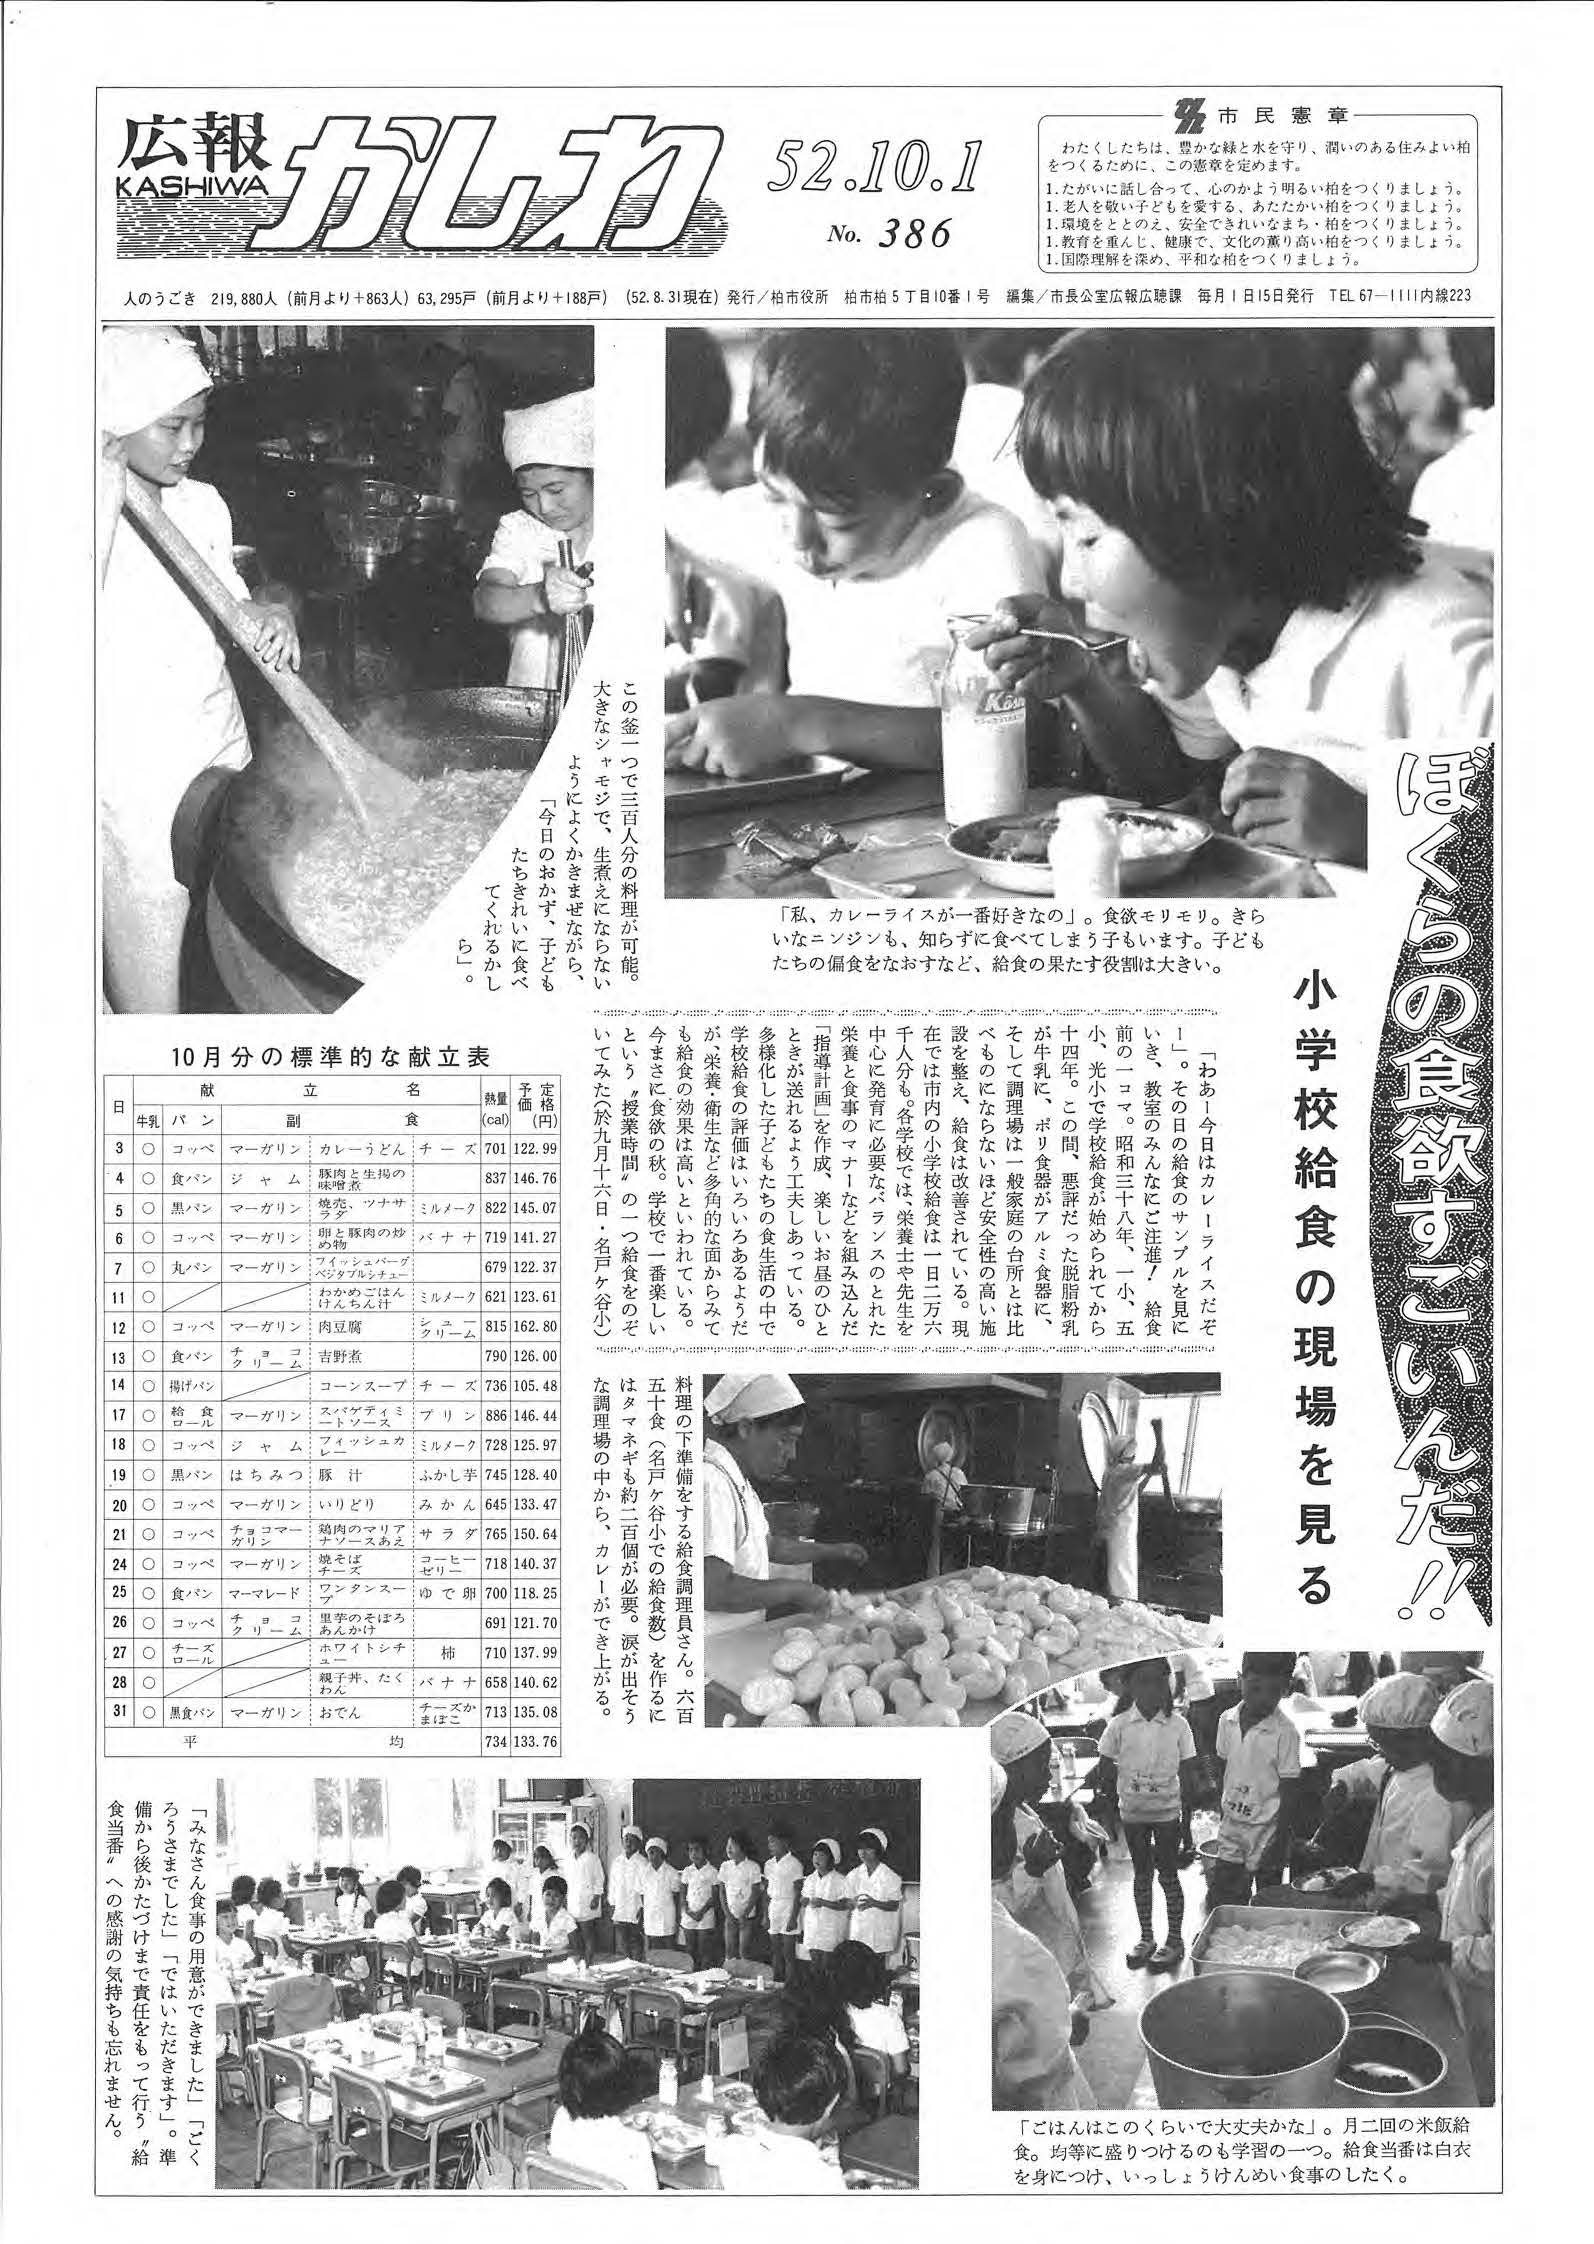 広報かしわ　昭和52年10月1日発行　386号